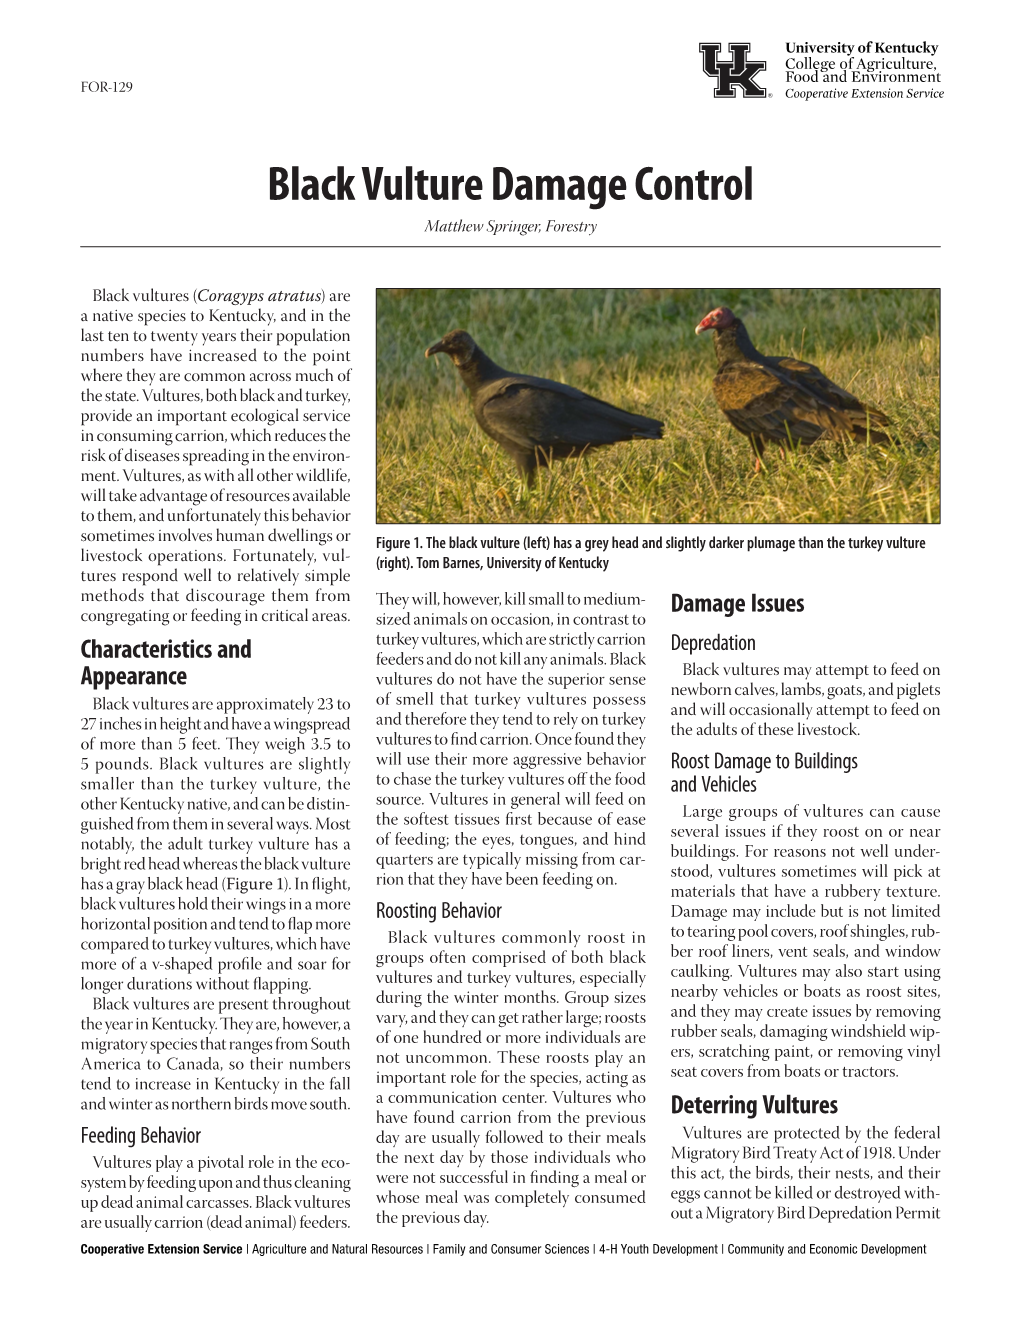 Black Vulture Damage Control Matthew Springer, Forestry